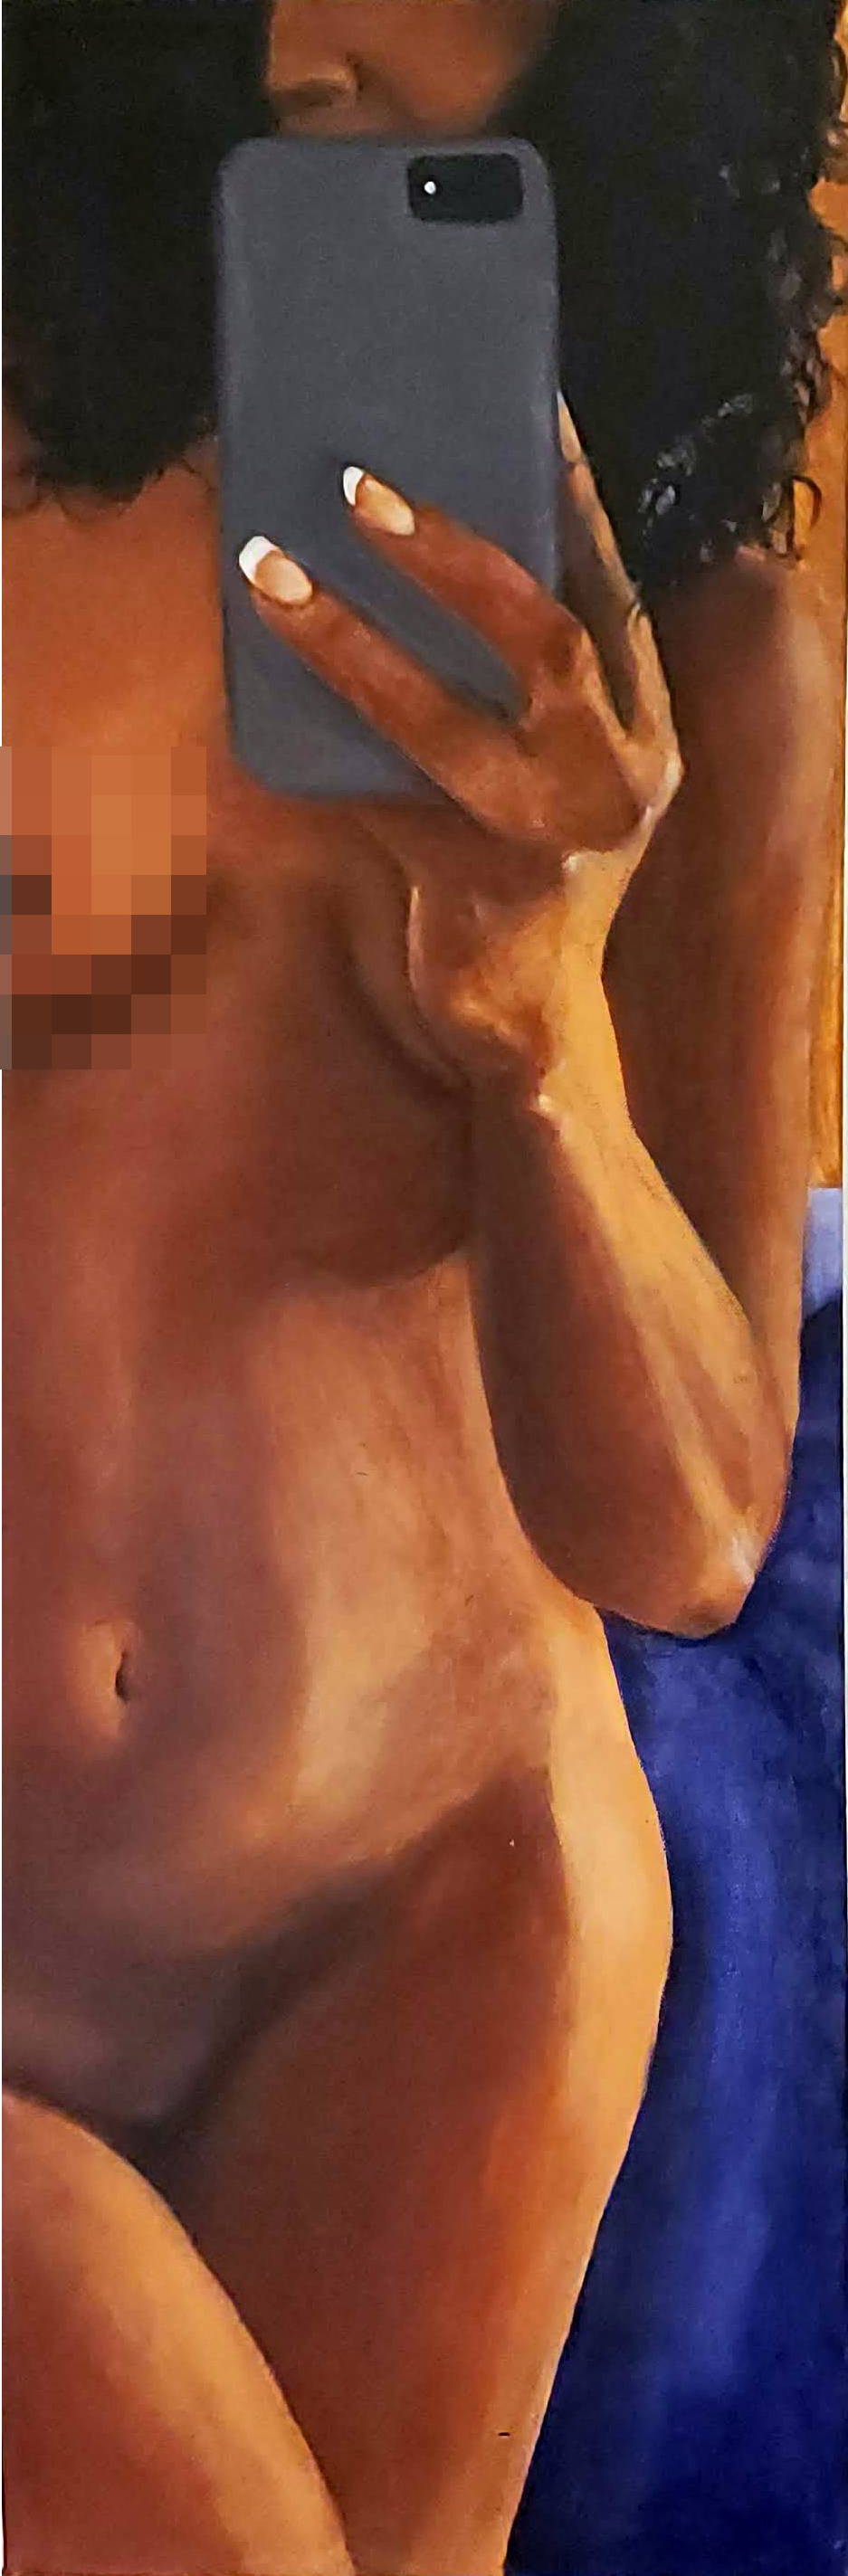 Nude Series Number 3 - Blue Selfie - 12x36